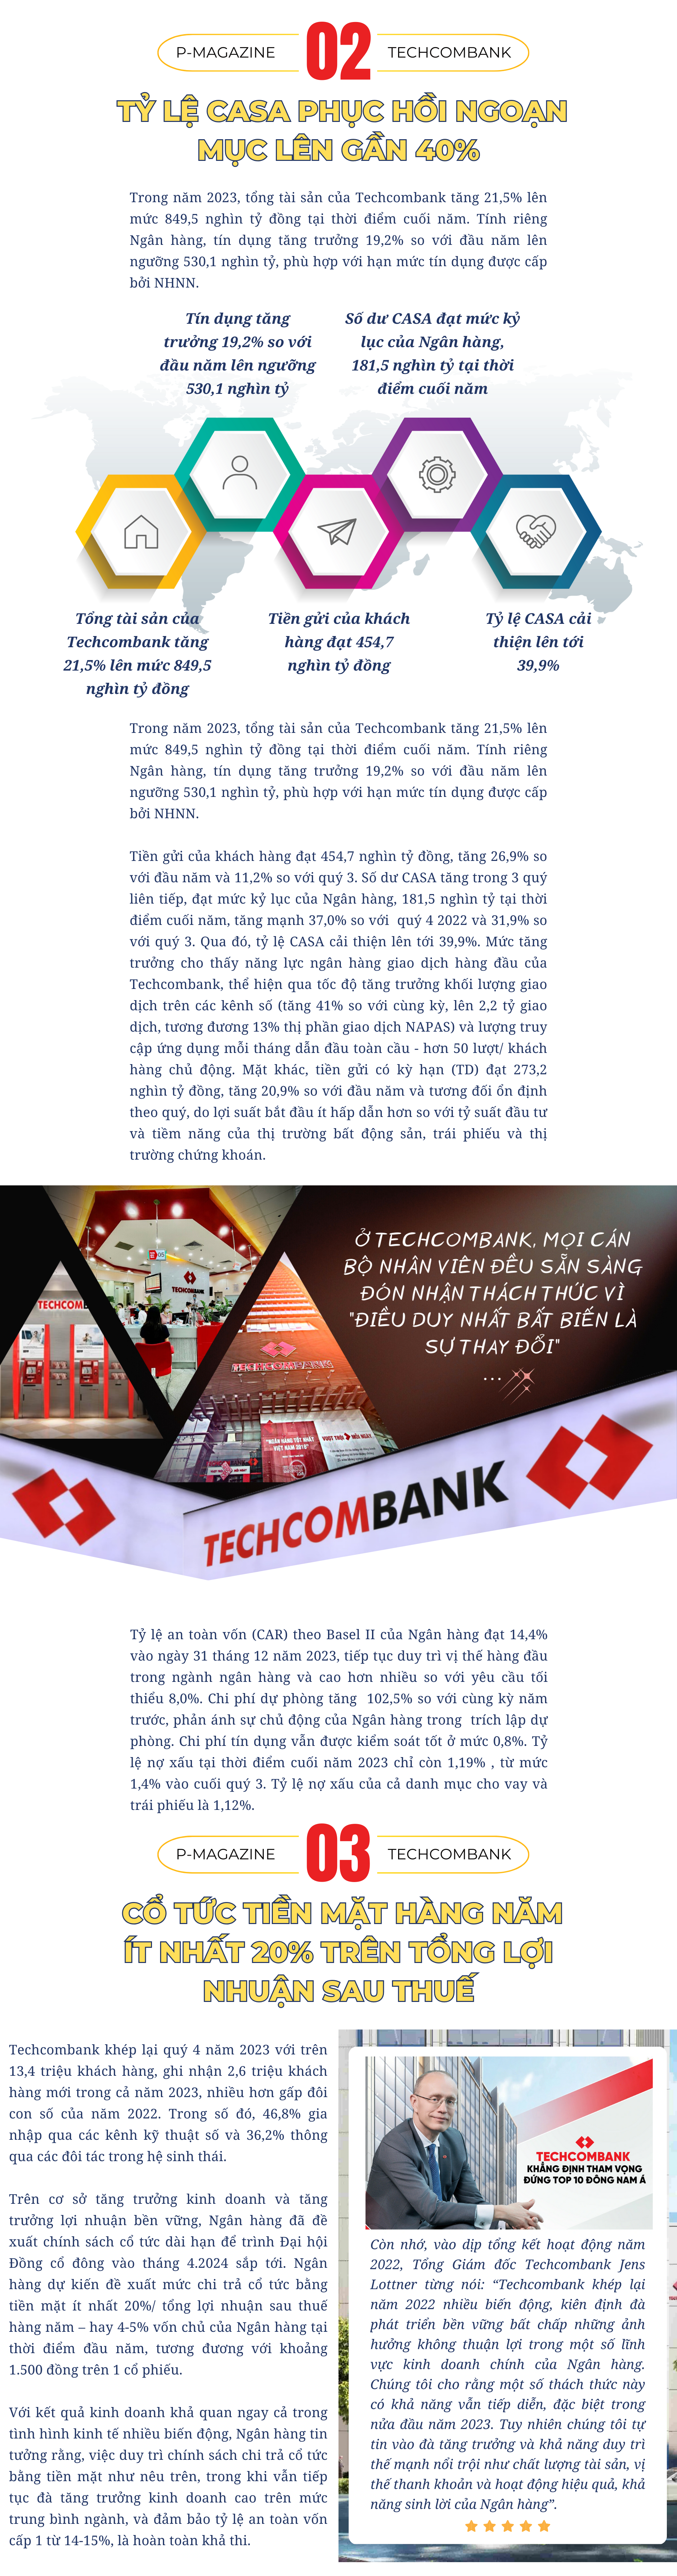 [P magazine] Techcombank vượt 3 tỷ USD lợi nhuận trong 3 năm gần nhất